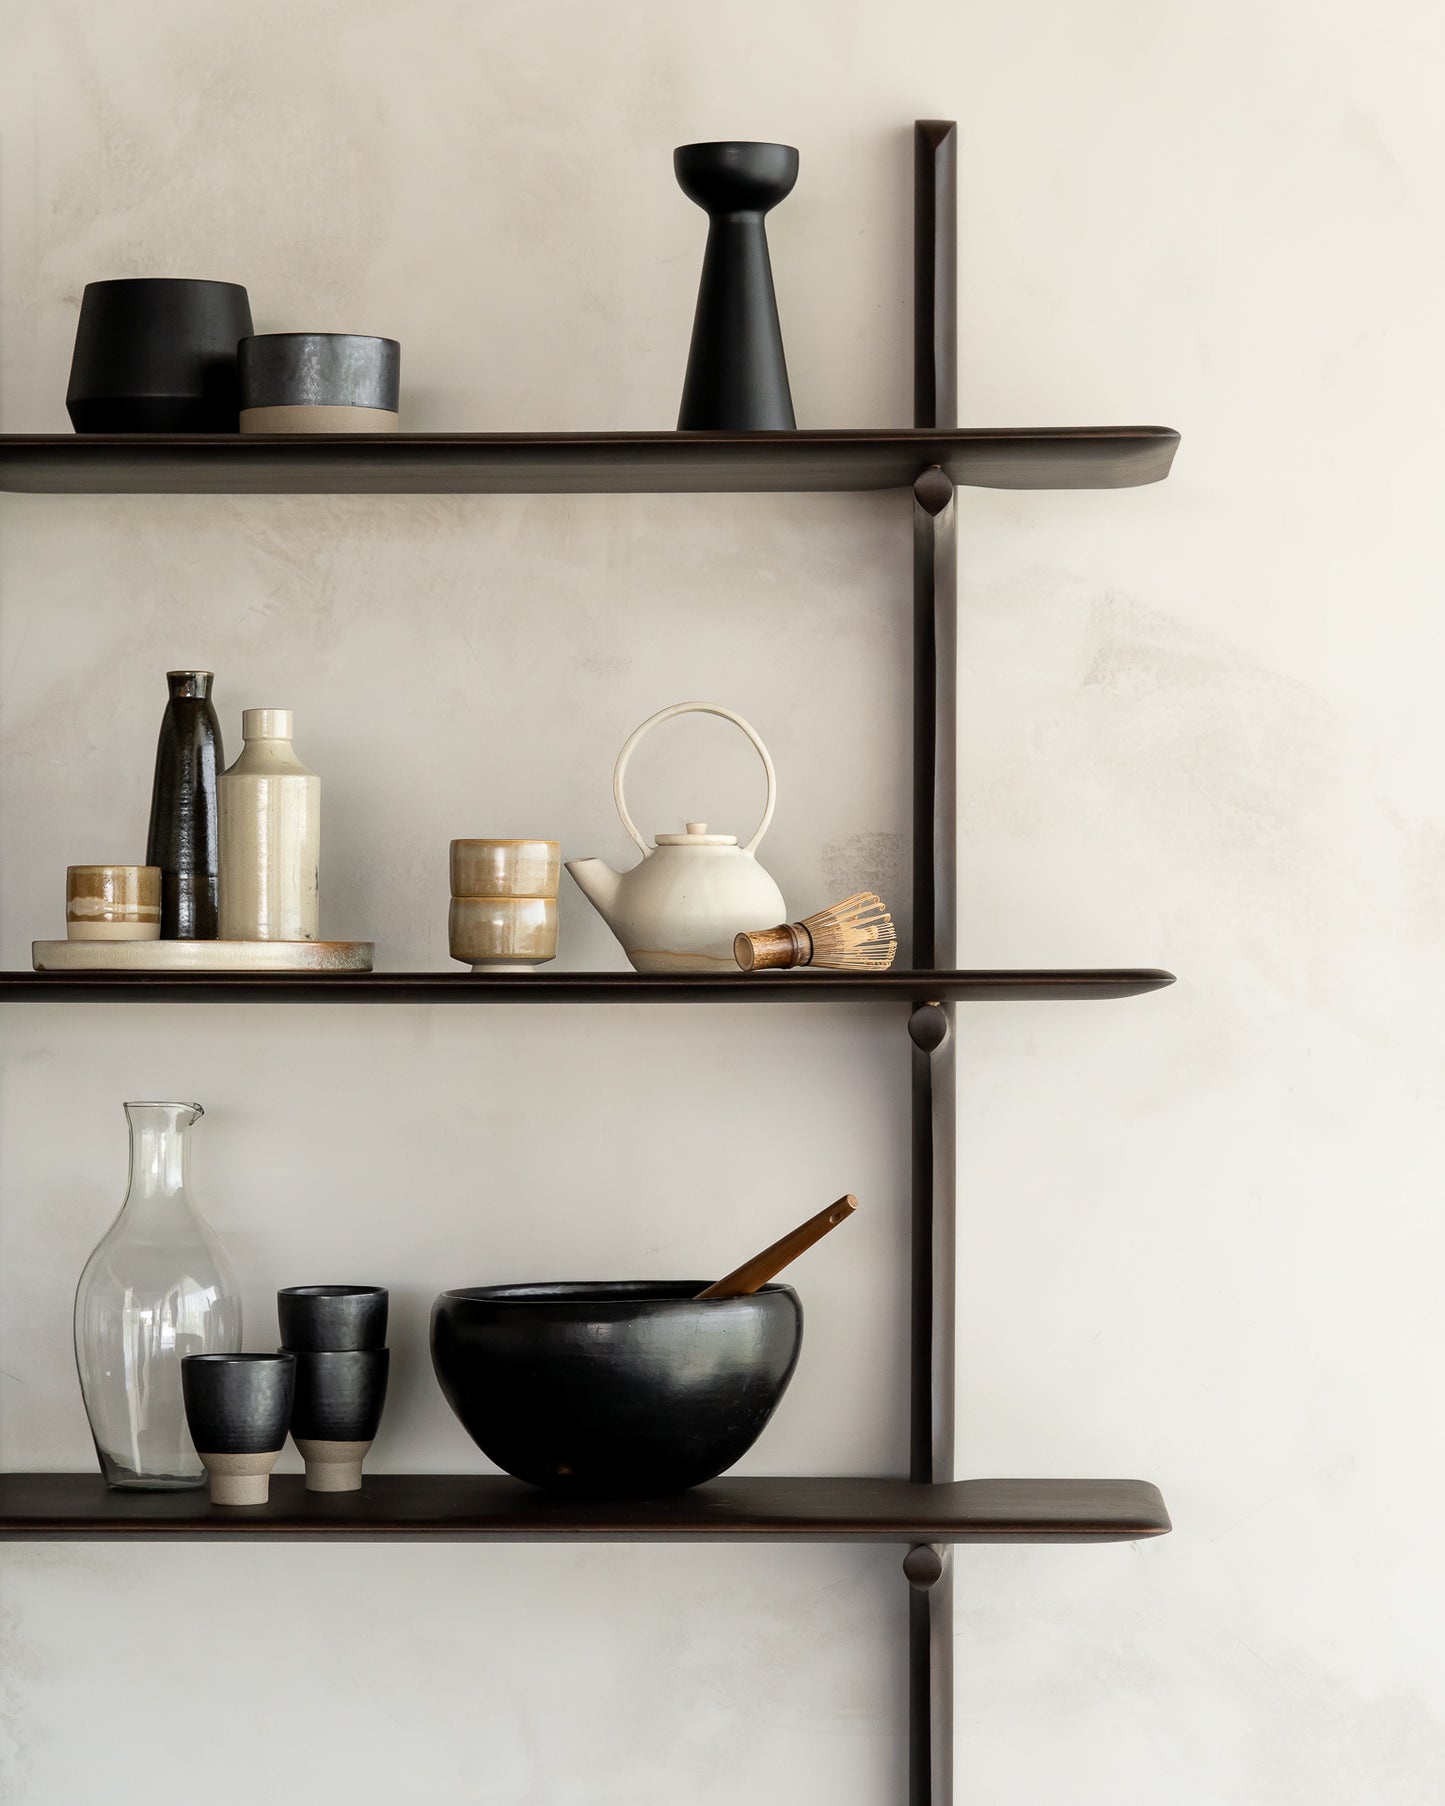 PI Wall Shelf 3 Dark Brown by Ethnicraft detail kitchen